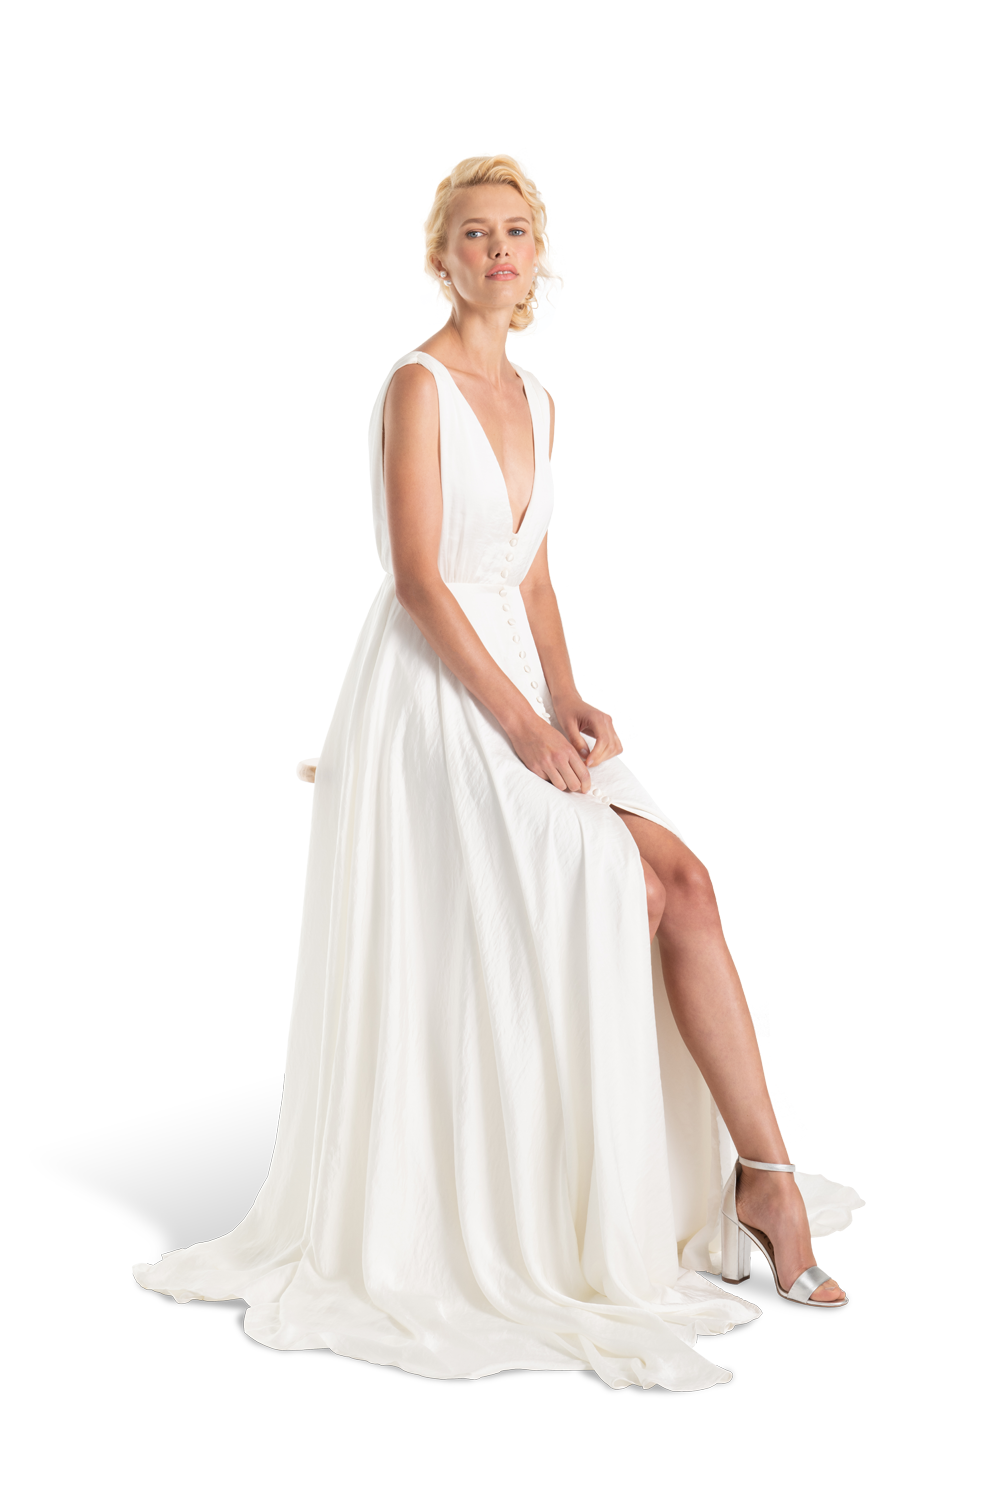 GC#911960 - Joanna August Joplin Dress in Size 8